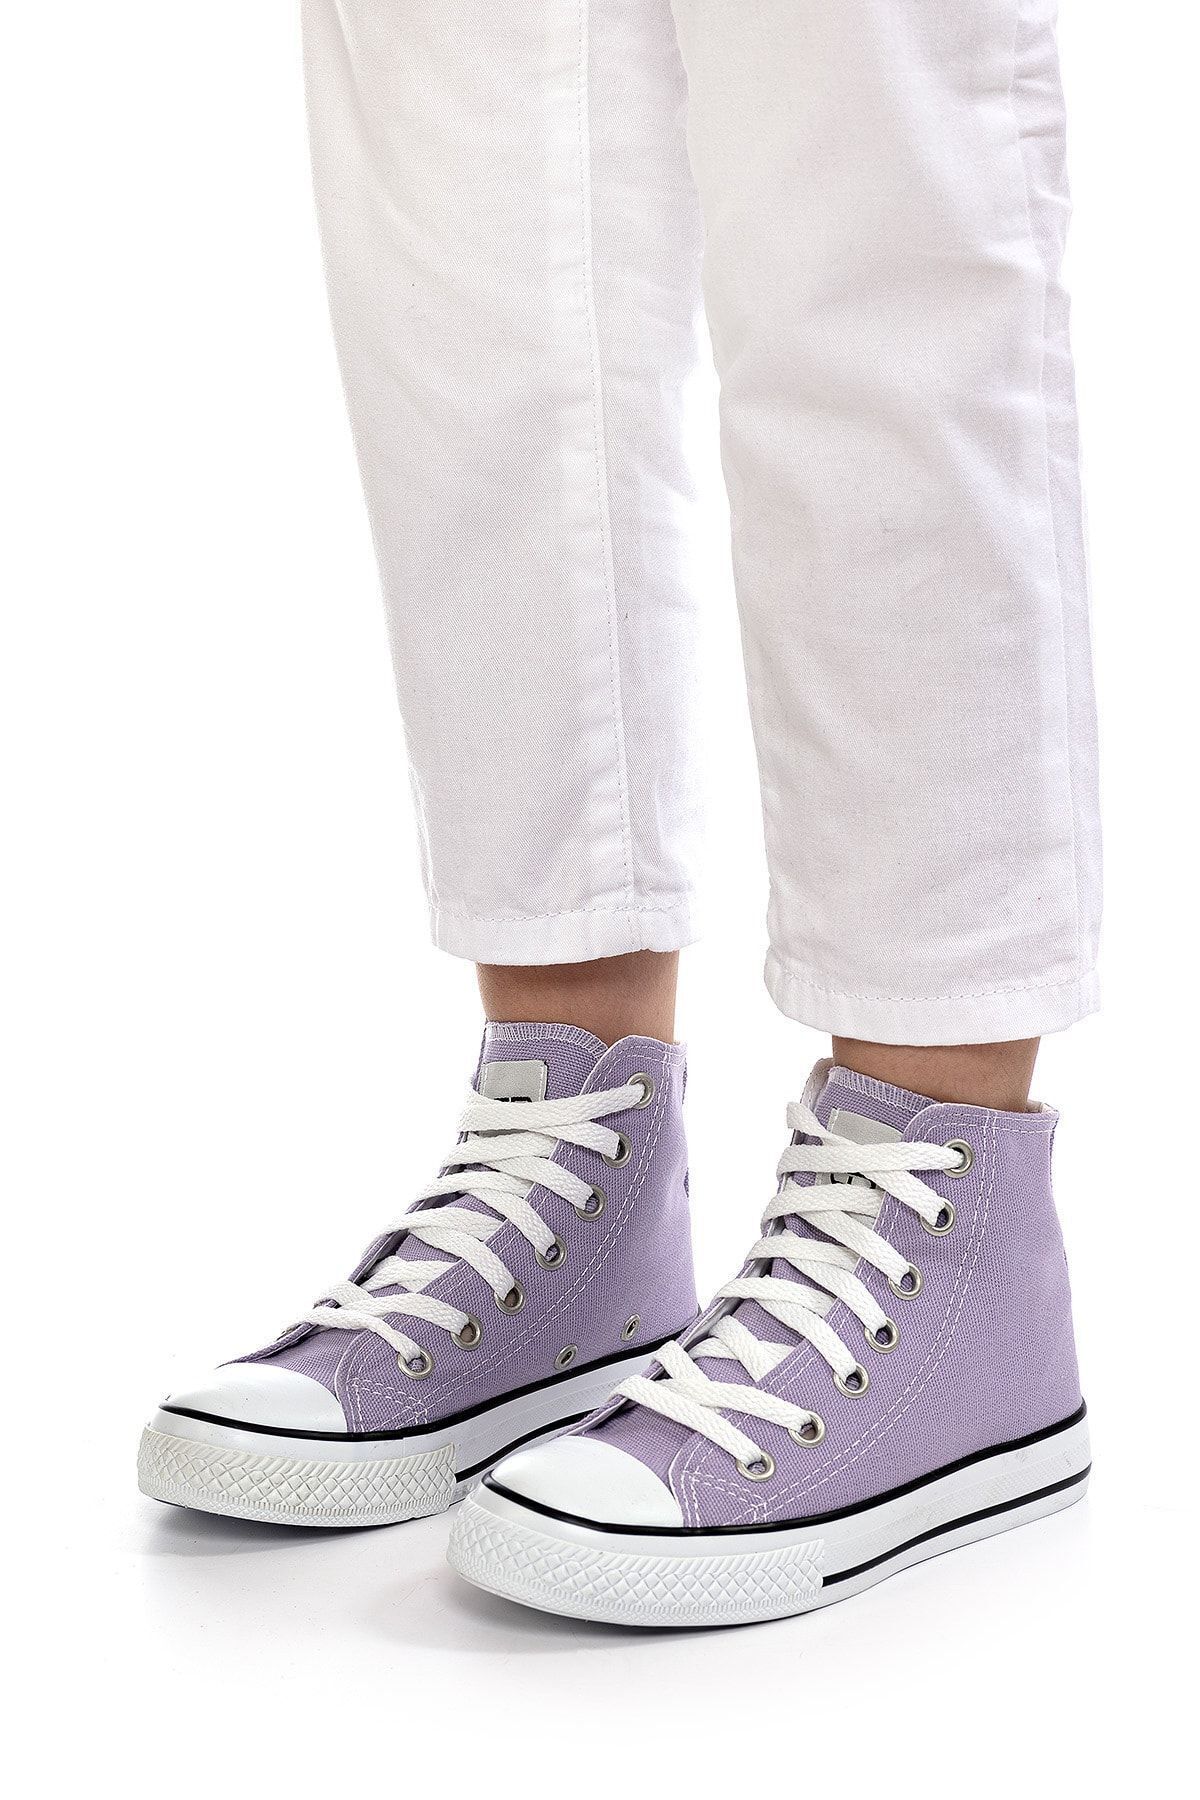 Solo Bag Solo Shoes&bag Lila Çocuk Unisex Bilekli Spor Günlük Ayakkabı